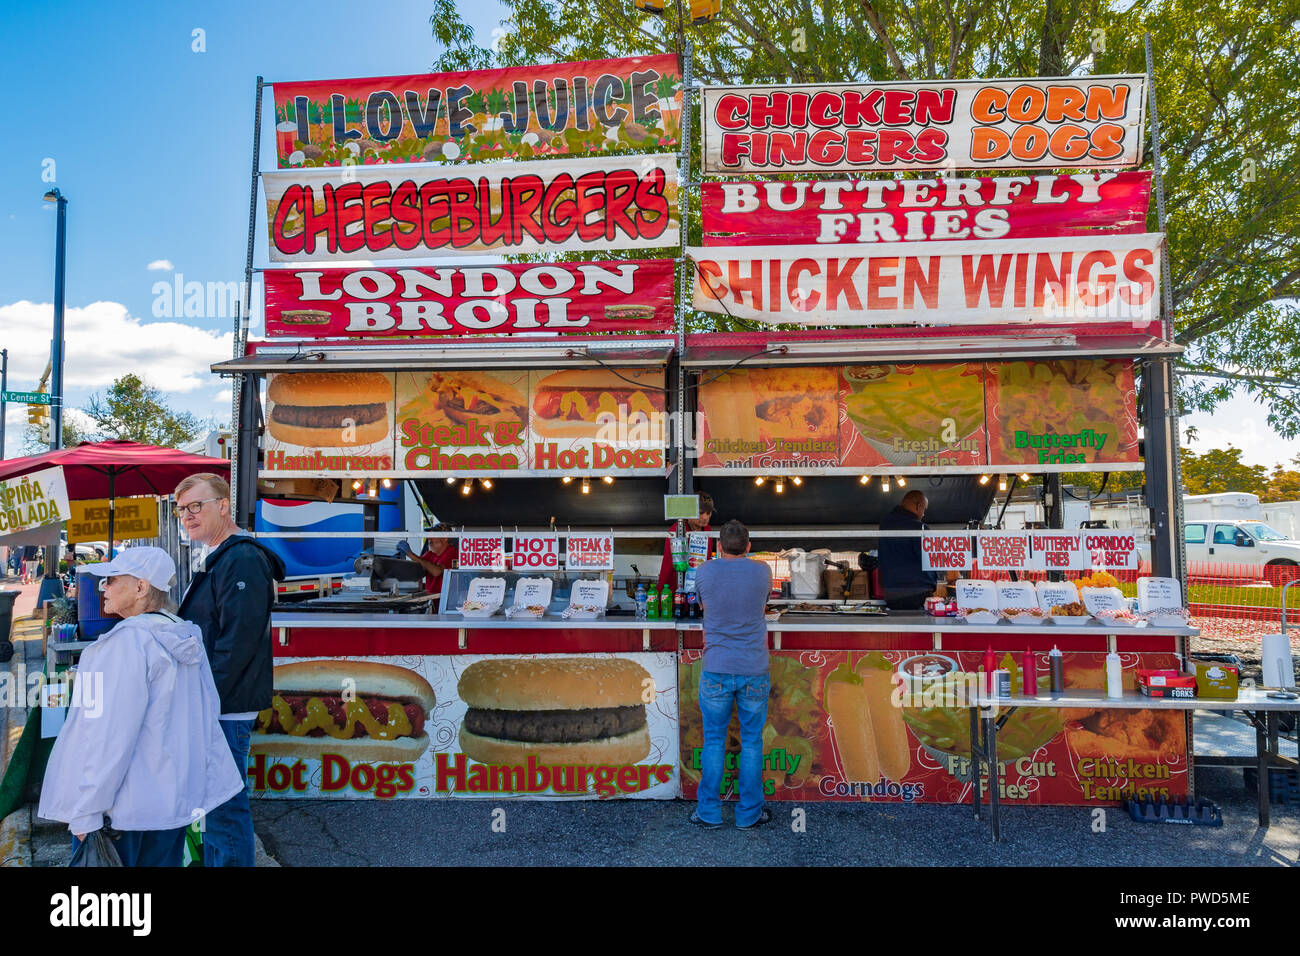 HICKORY, NC, Stati Uniti d'America-10/14/18: una concessione stand presso il locale fall festival offre cheeseburger e ali di pollo. Foto Stock